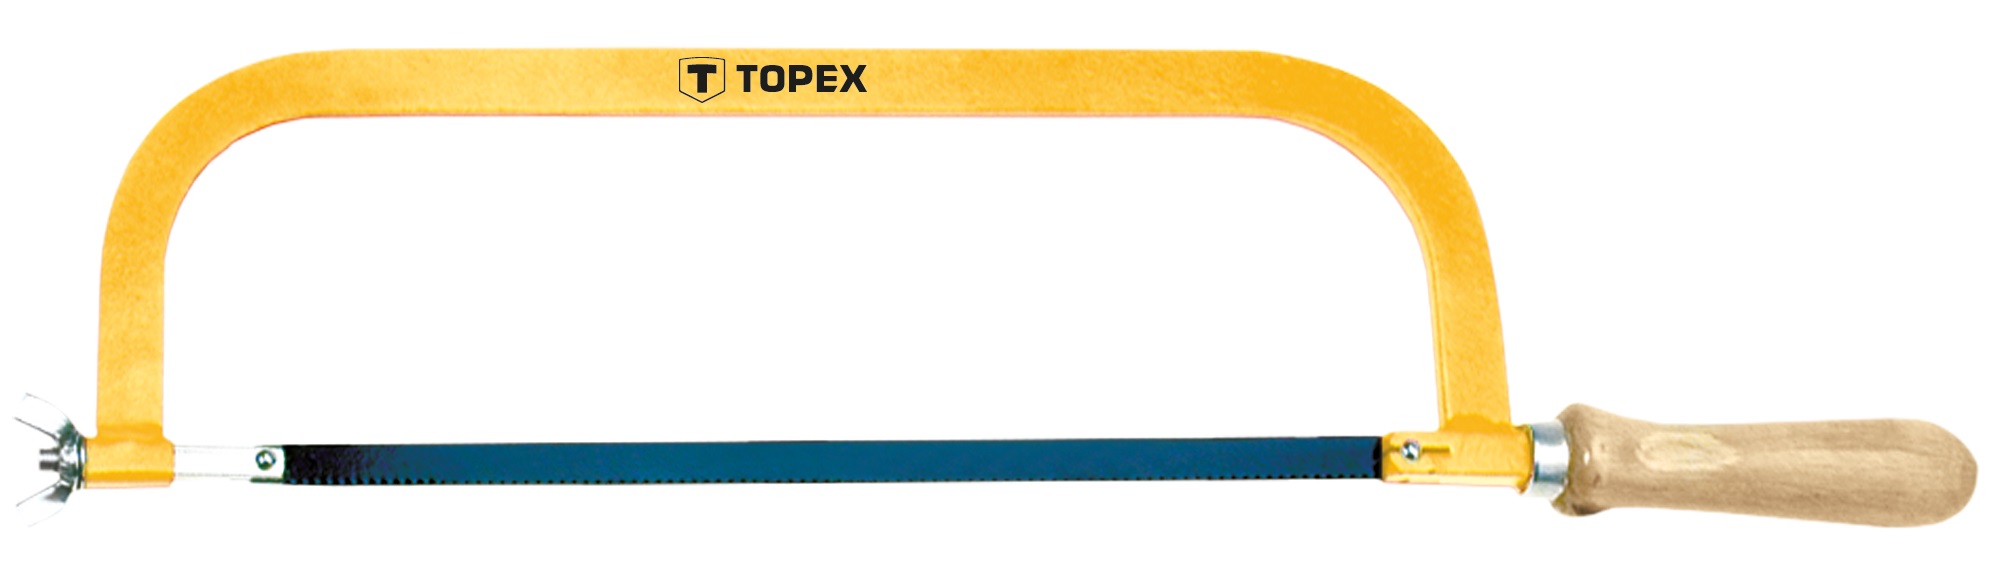 Ножівка по металу Topex 10A130, 300 мм (10A130)